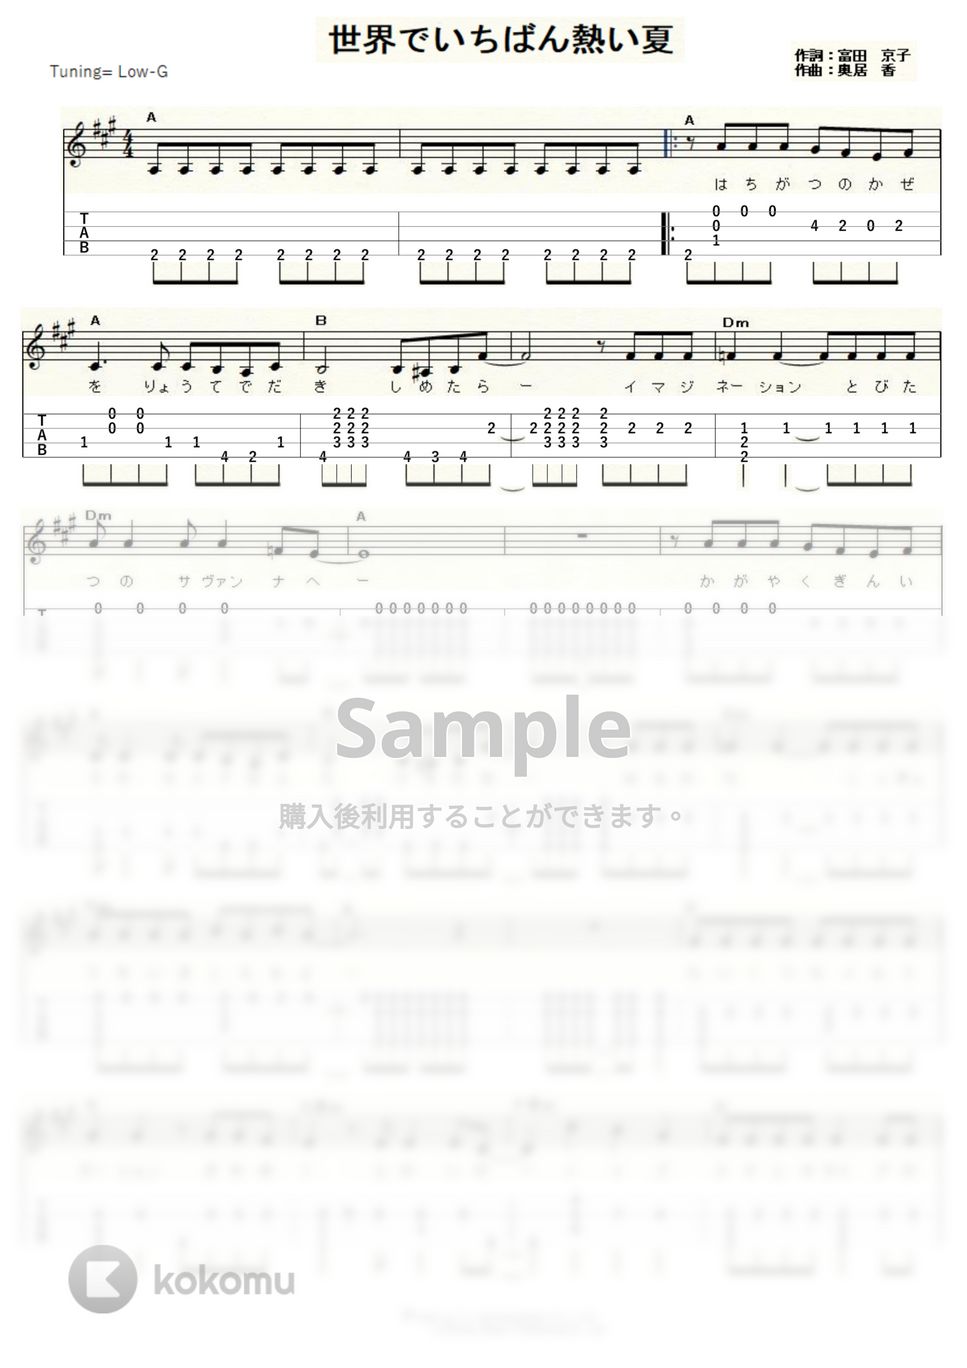 プリンセス プリンセス - 世界でいちばん熱い夏 (Low-G) by ukulelepapa